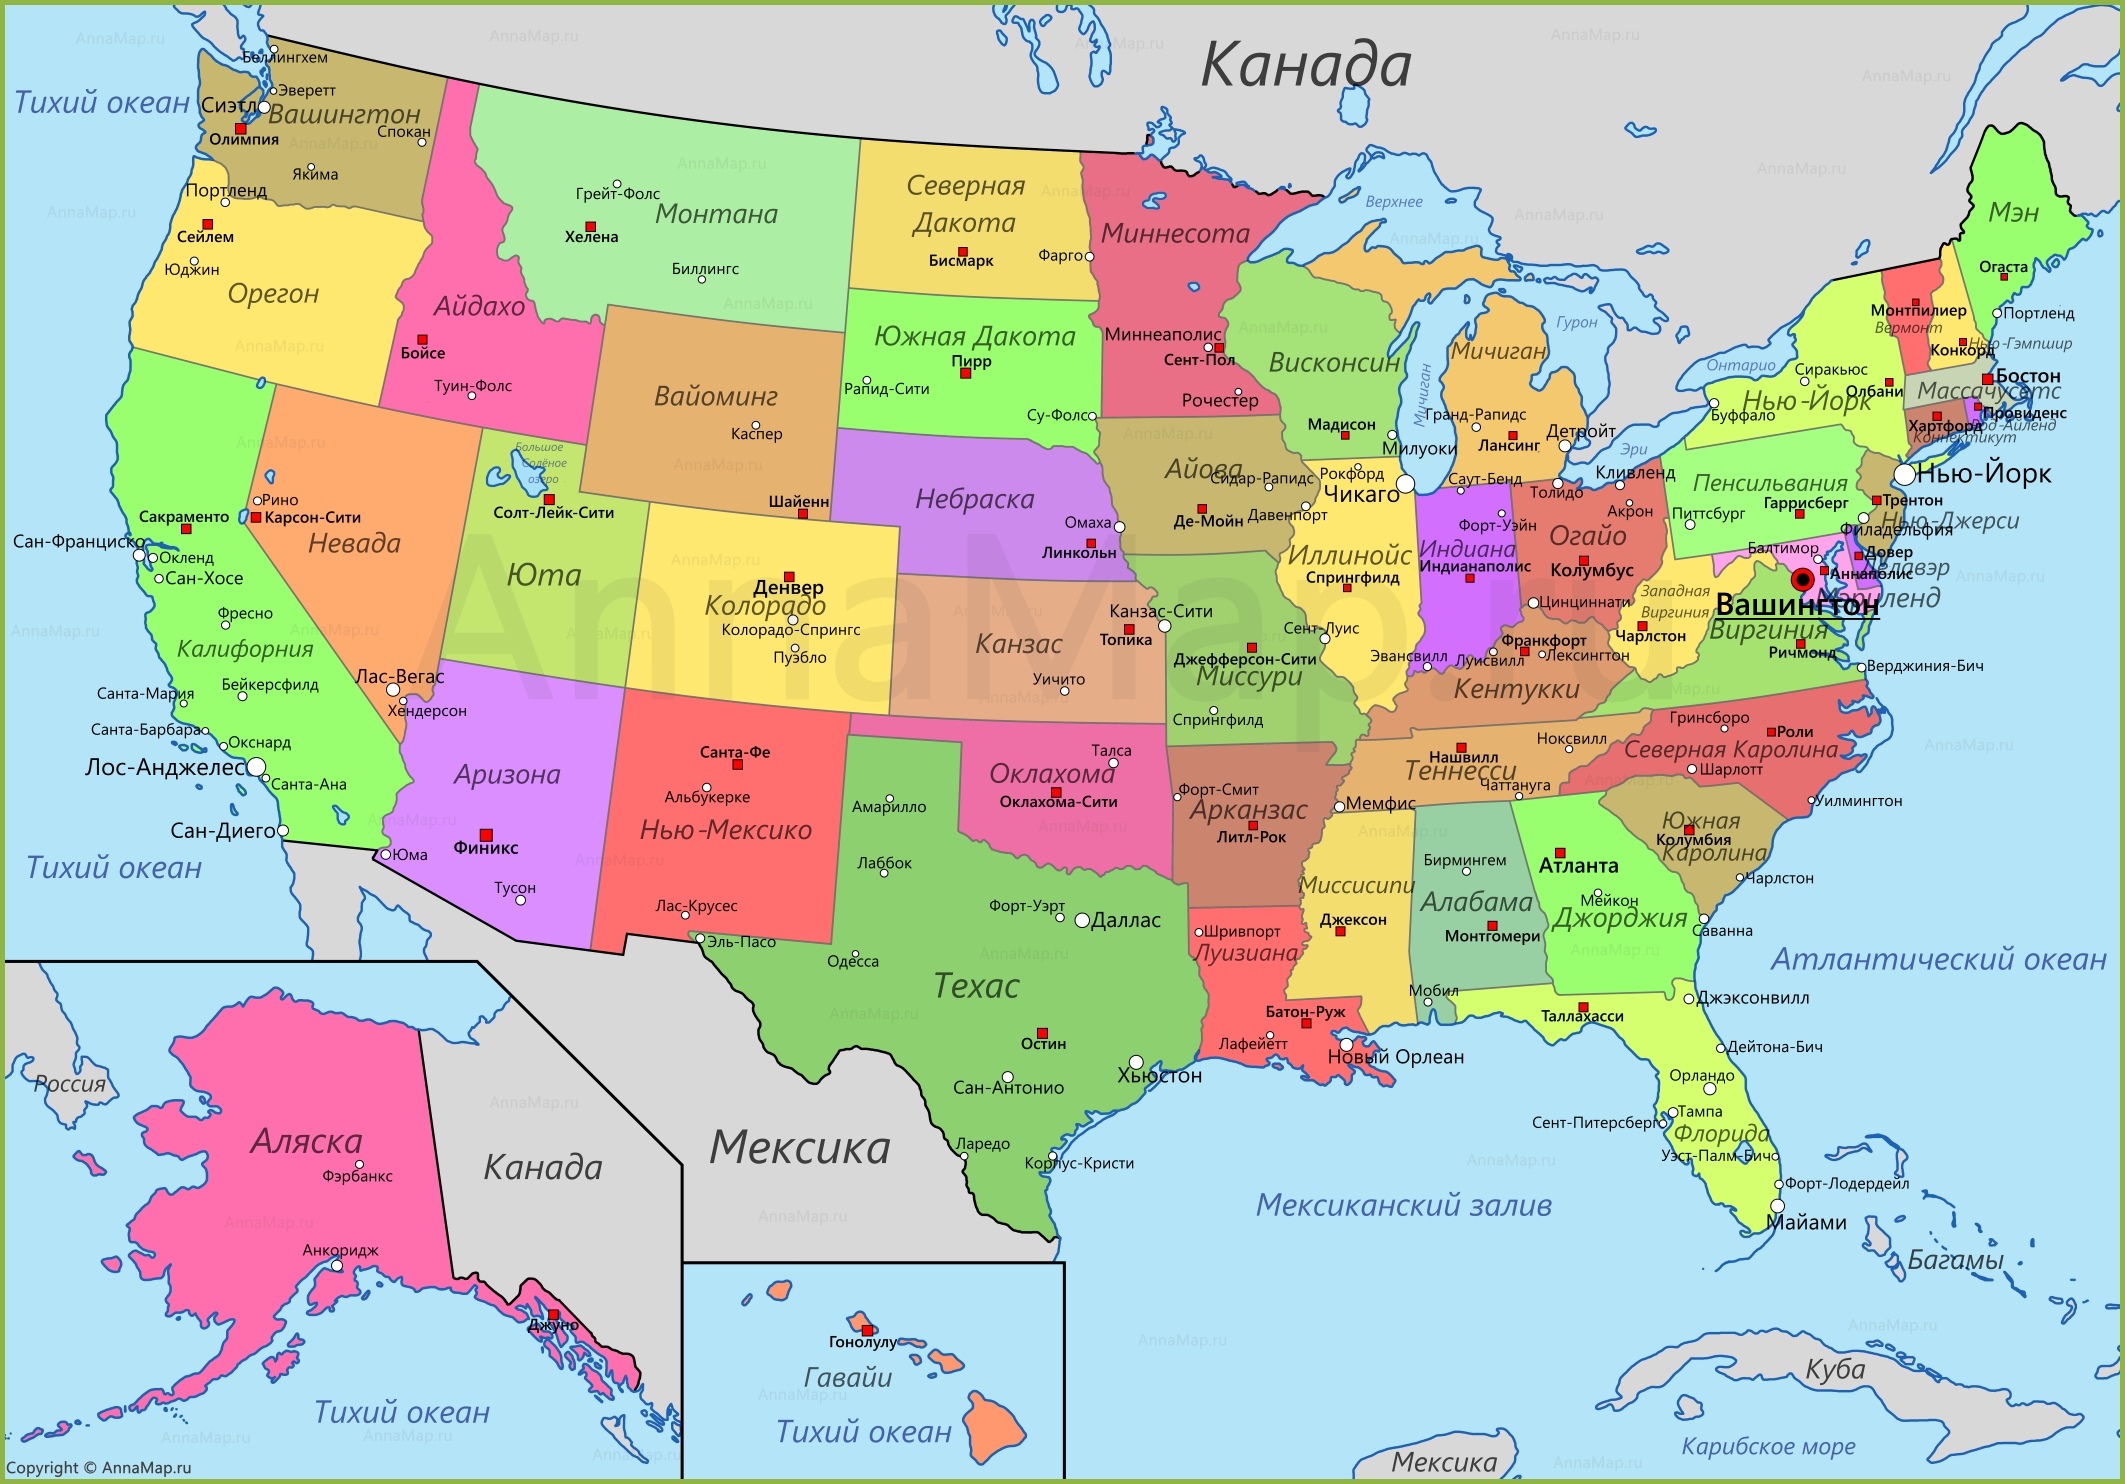 Сколько штатов в США?